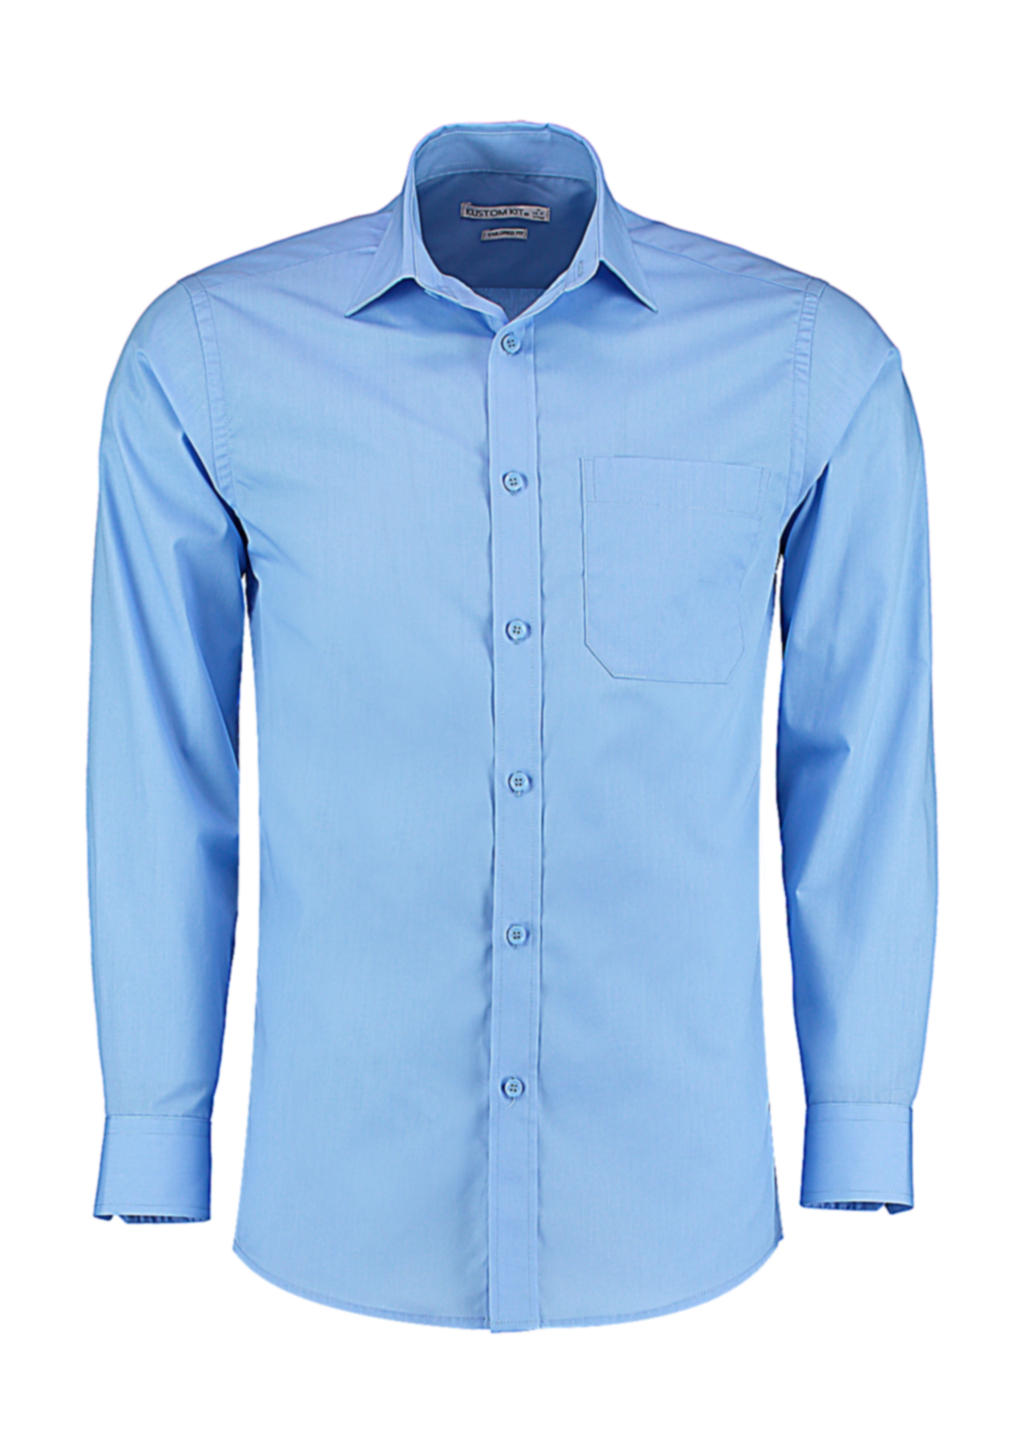 771.11 / Tailored Fit Poplin Shirt / Light Blue